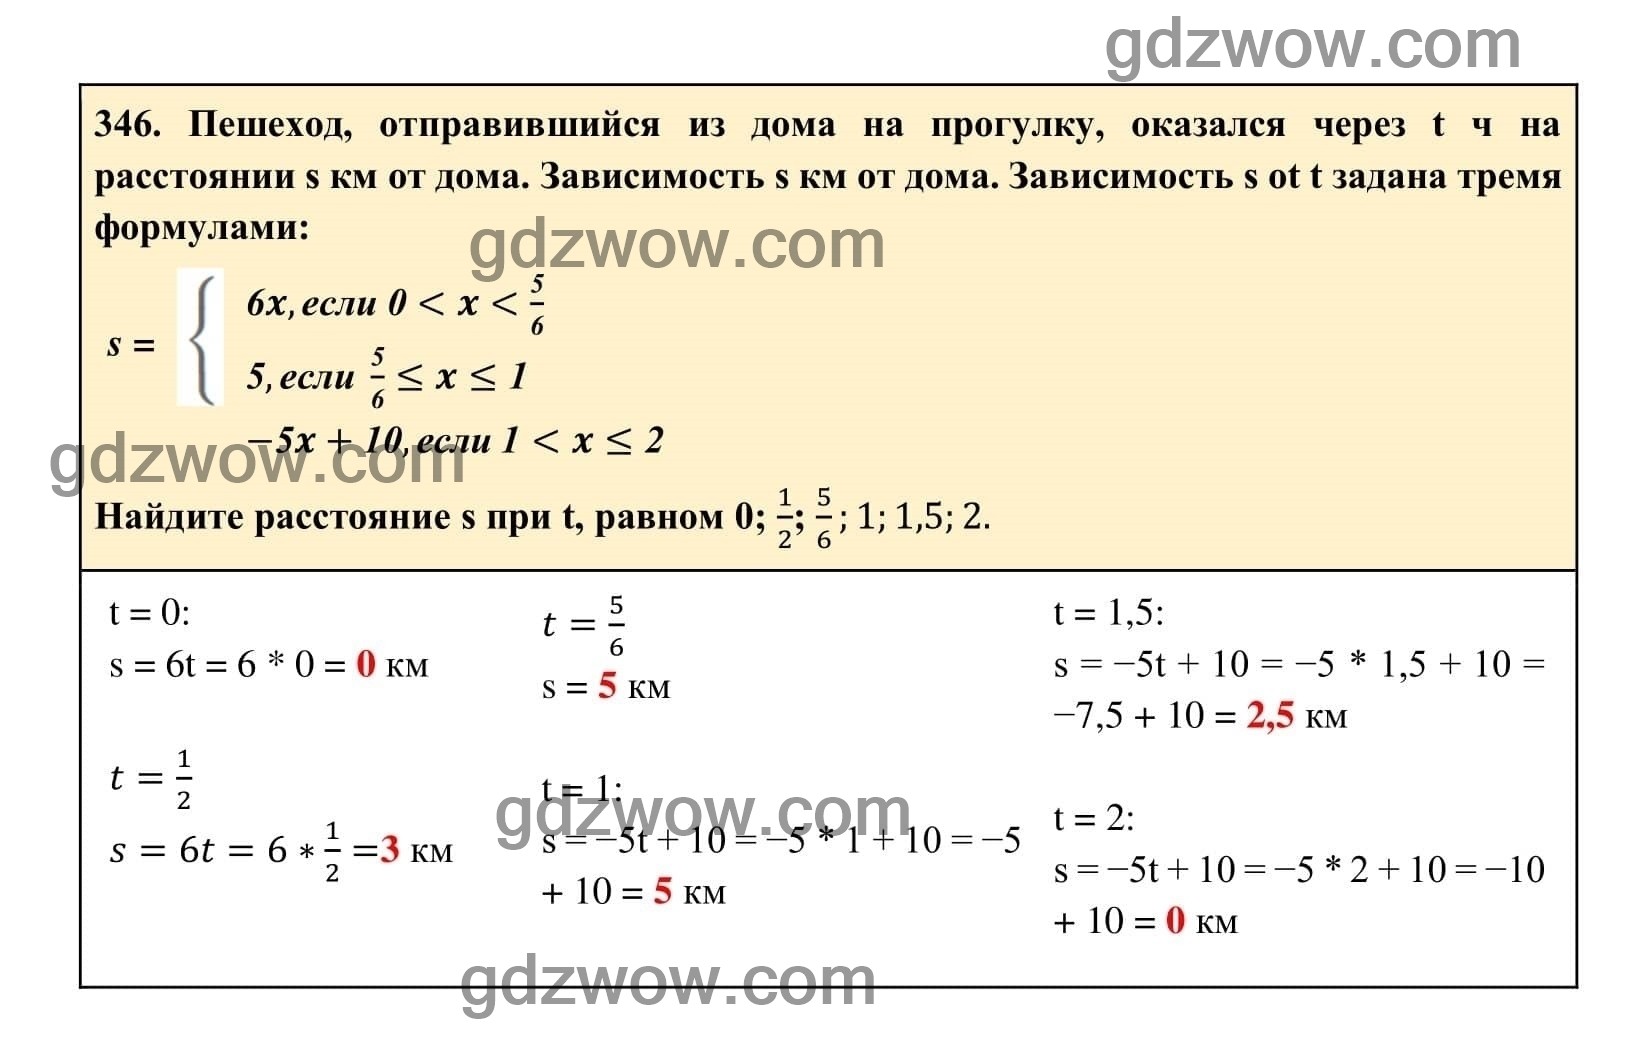 Упражнение 346 - ГДЗ по Алгебре 7 класс Учебник Макарычев (решебник) - GDZwow